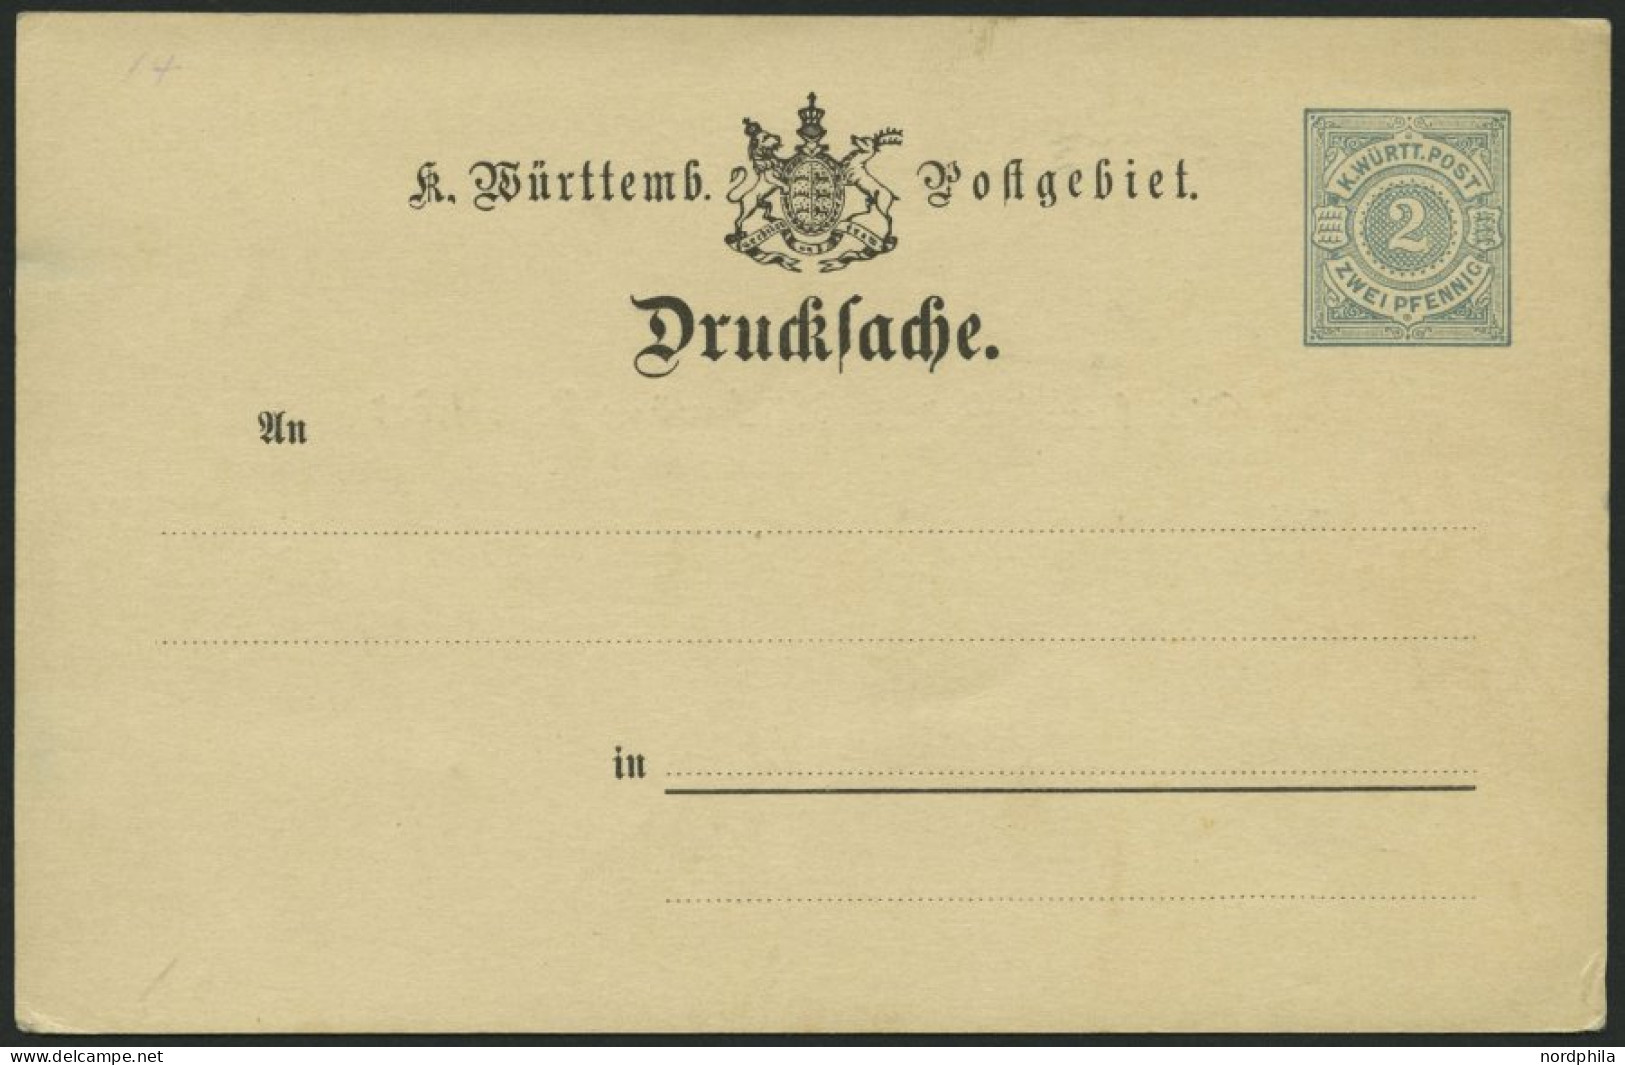 WÜRTTEMBERG DRP 6 BRIEF, 1893, 2 Pf., Rechteckiger Rahmen, Drucksachen-Postkarte, Mit Wappen, Ungebraucht, Feinst (rücks - Postwaardestukken